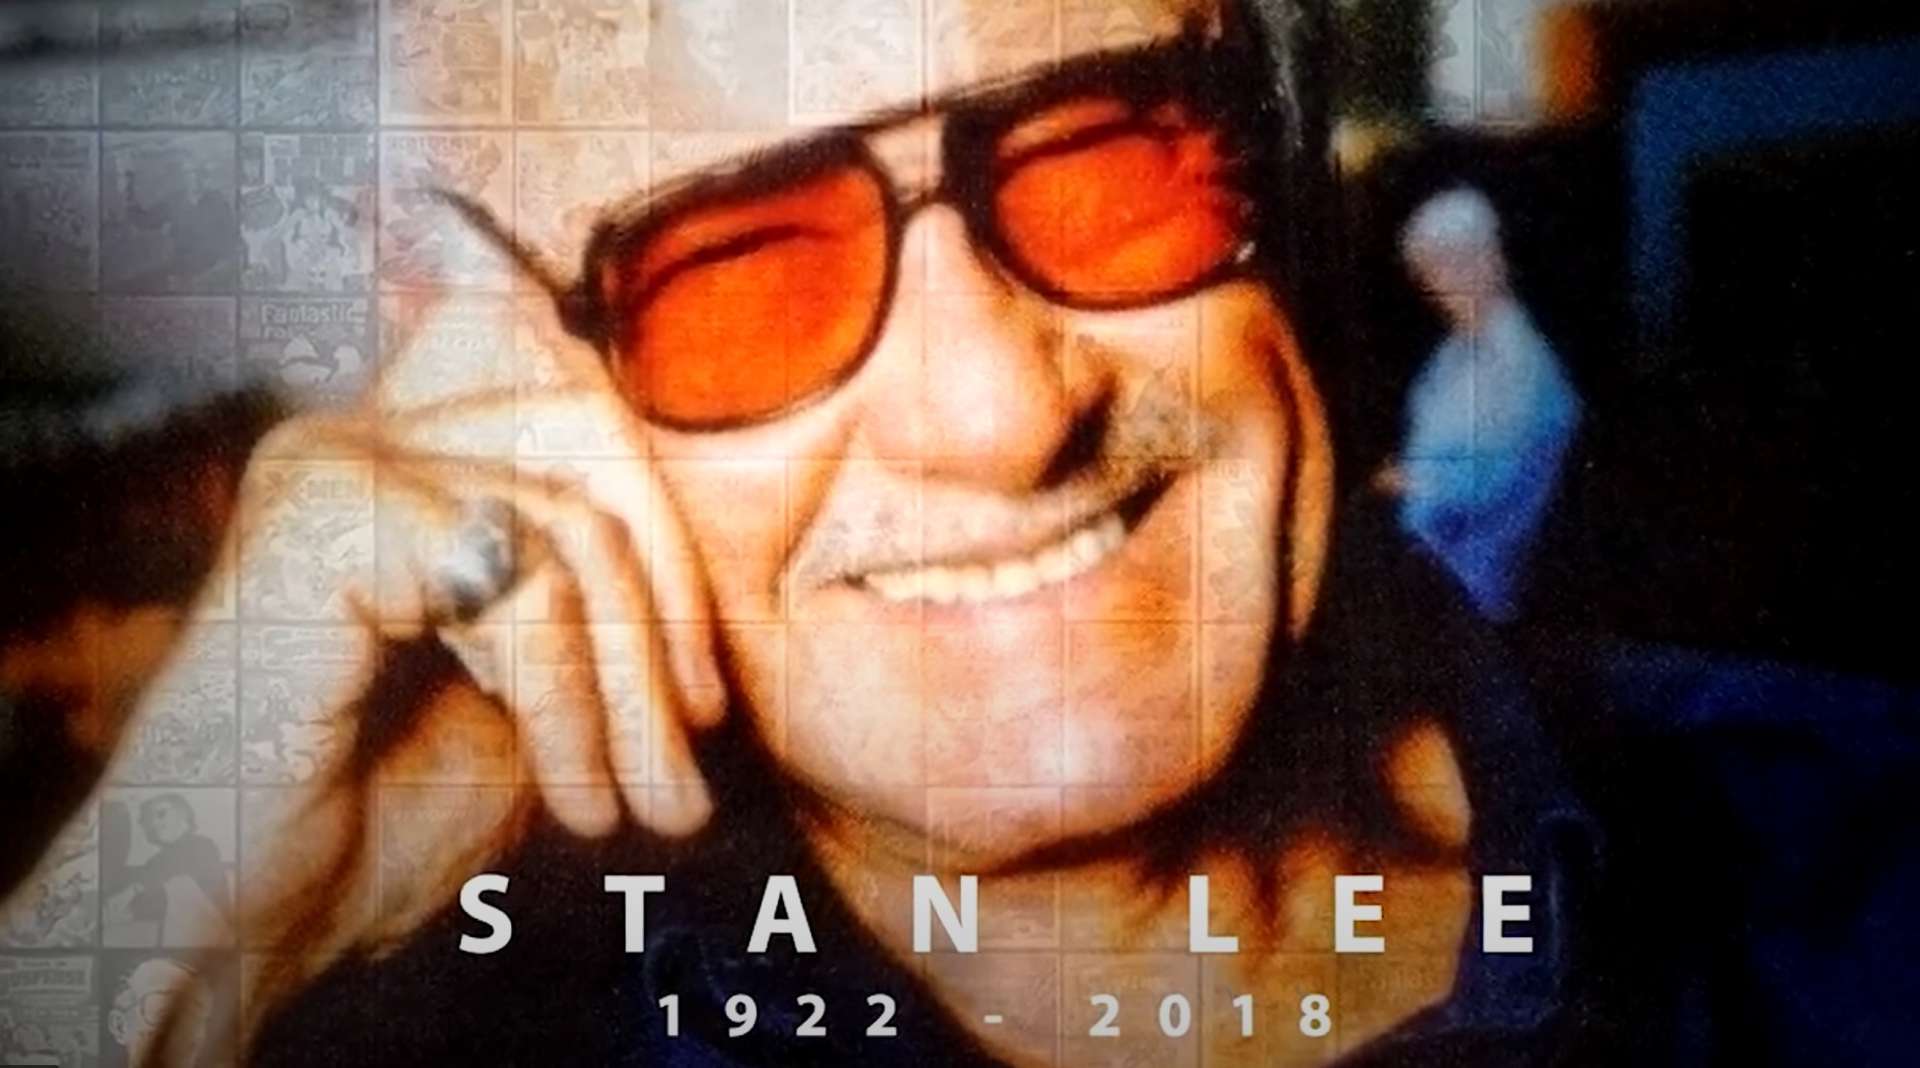 斯坦·李逝世两周年纪念混剪《感谢你的一切》